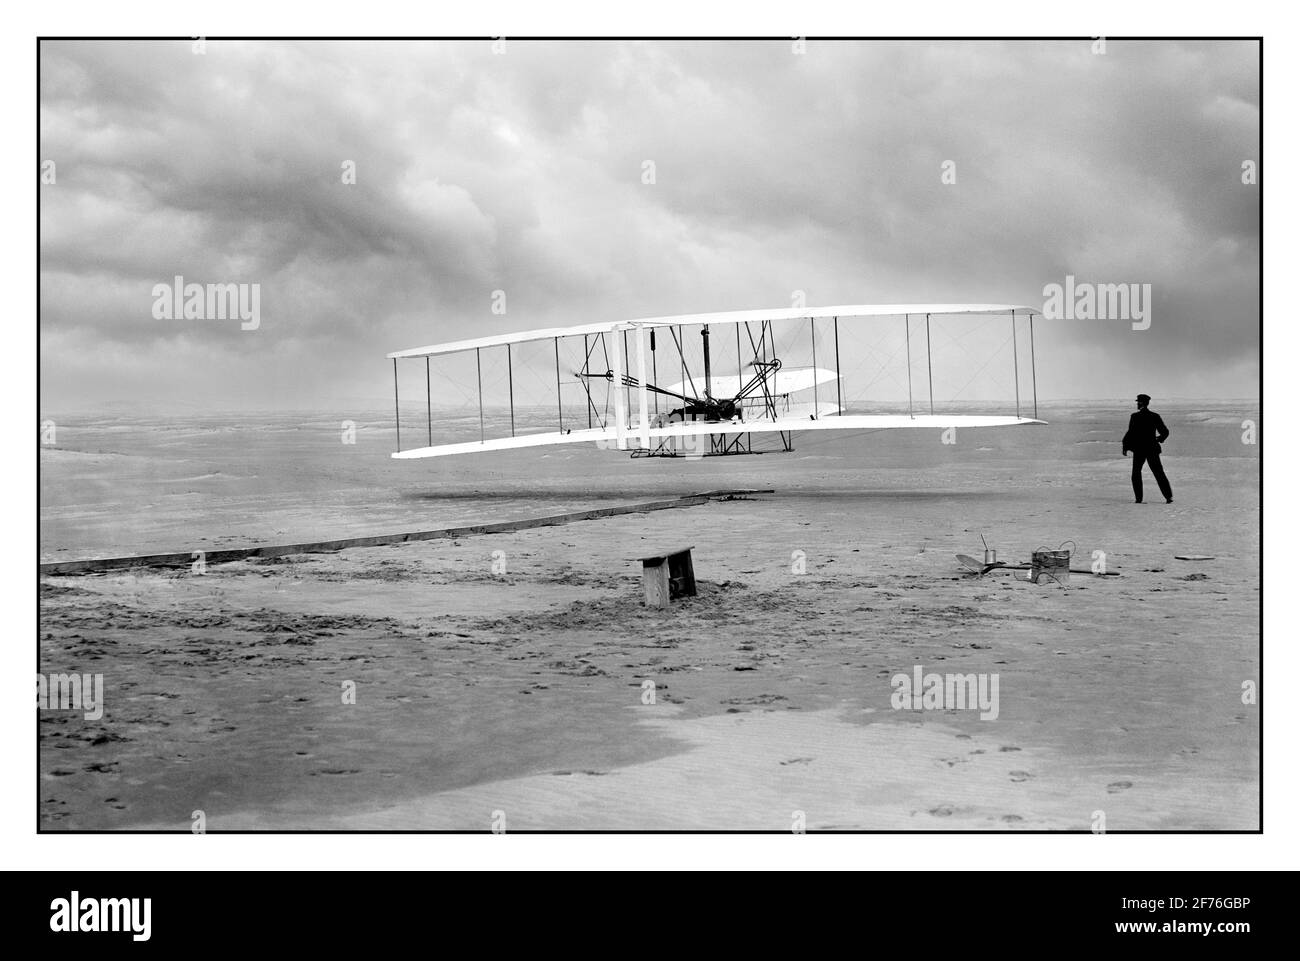 WRIGHT BROTHERS ERSTER MOTORBETRIEBENER FLUG ARCHIV 1900 Wright Brothers machen ersten motorisierten Flug 1903 Kitty Hawk, North Carolina, USA das Amerika-Foto zeigt den ersten motorisierten, kontrollierten, nachhaltigen Flug. Orville Wright an den Bedienelementen der Maschine, gestreckt auf dem unteren Flügel mit Hüften in der Wiege liegend, die den Wing-Warping-Mechanismus betätigte. Wilbur Wright läuft mit, um die Maschine zu balancieren, hat gerade seinen Halt an der nach vorne aufrechten Seite des rechten Flügels freigegeben. Hinter der Maschine sind die Startschiene, die Flügelstütze, eine Spulenbox und andere Elemente, die für die Flugvorbereitung benötigt werden, sichtbar. Stockfoto